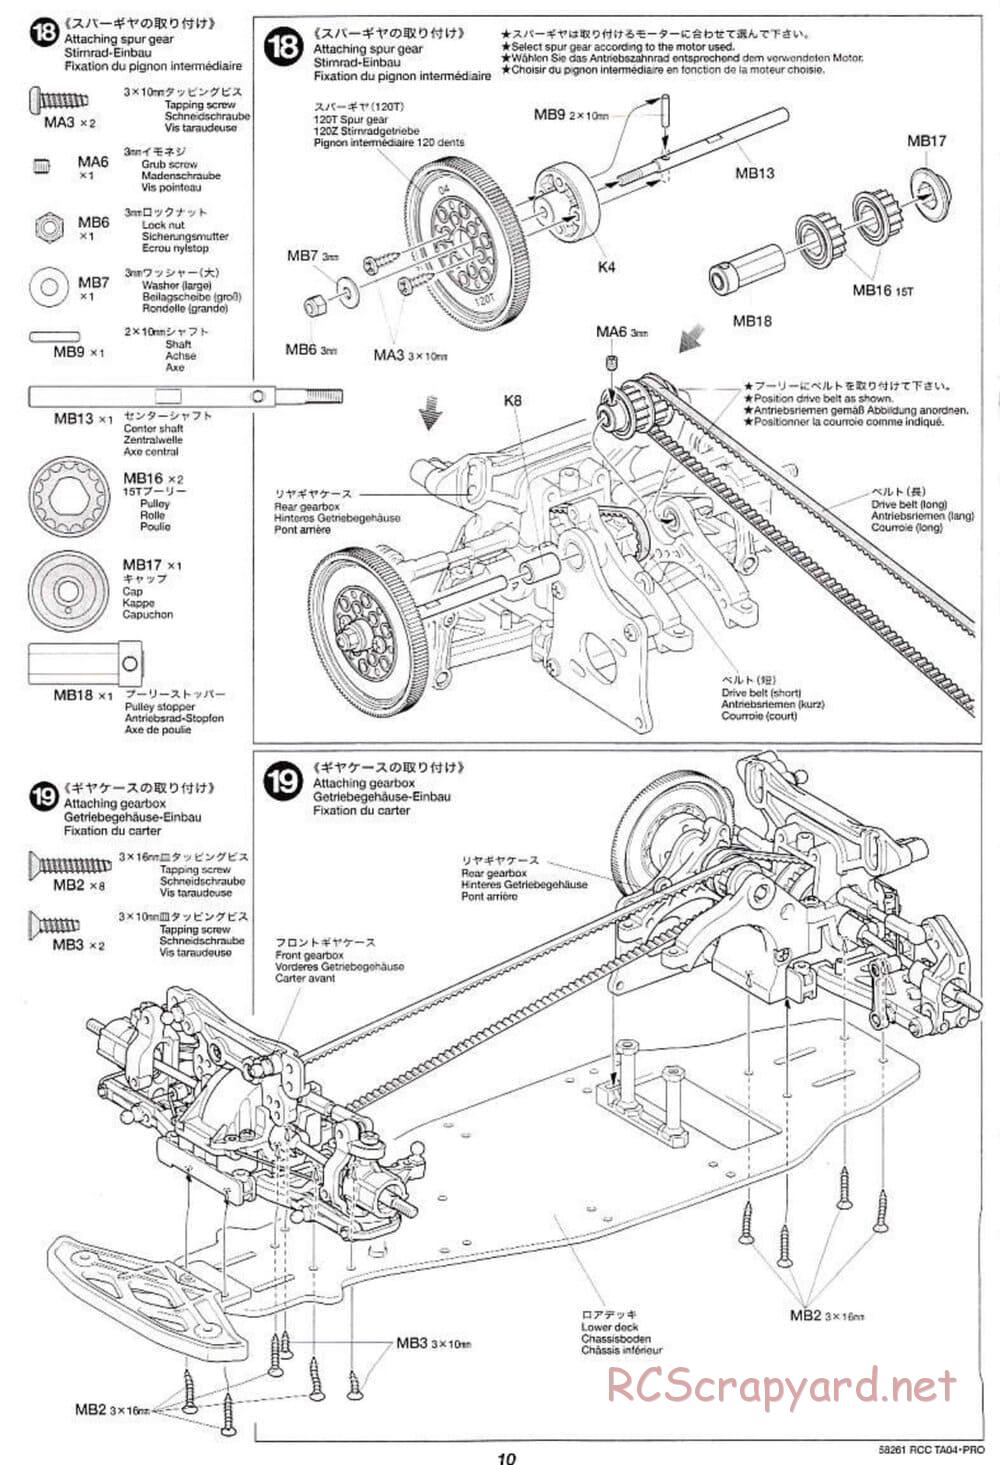 Tamiya - TA-04 Pro Chassis - Manual - Page 10